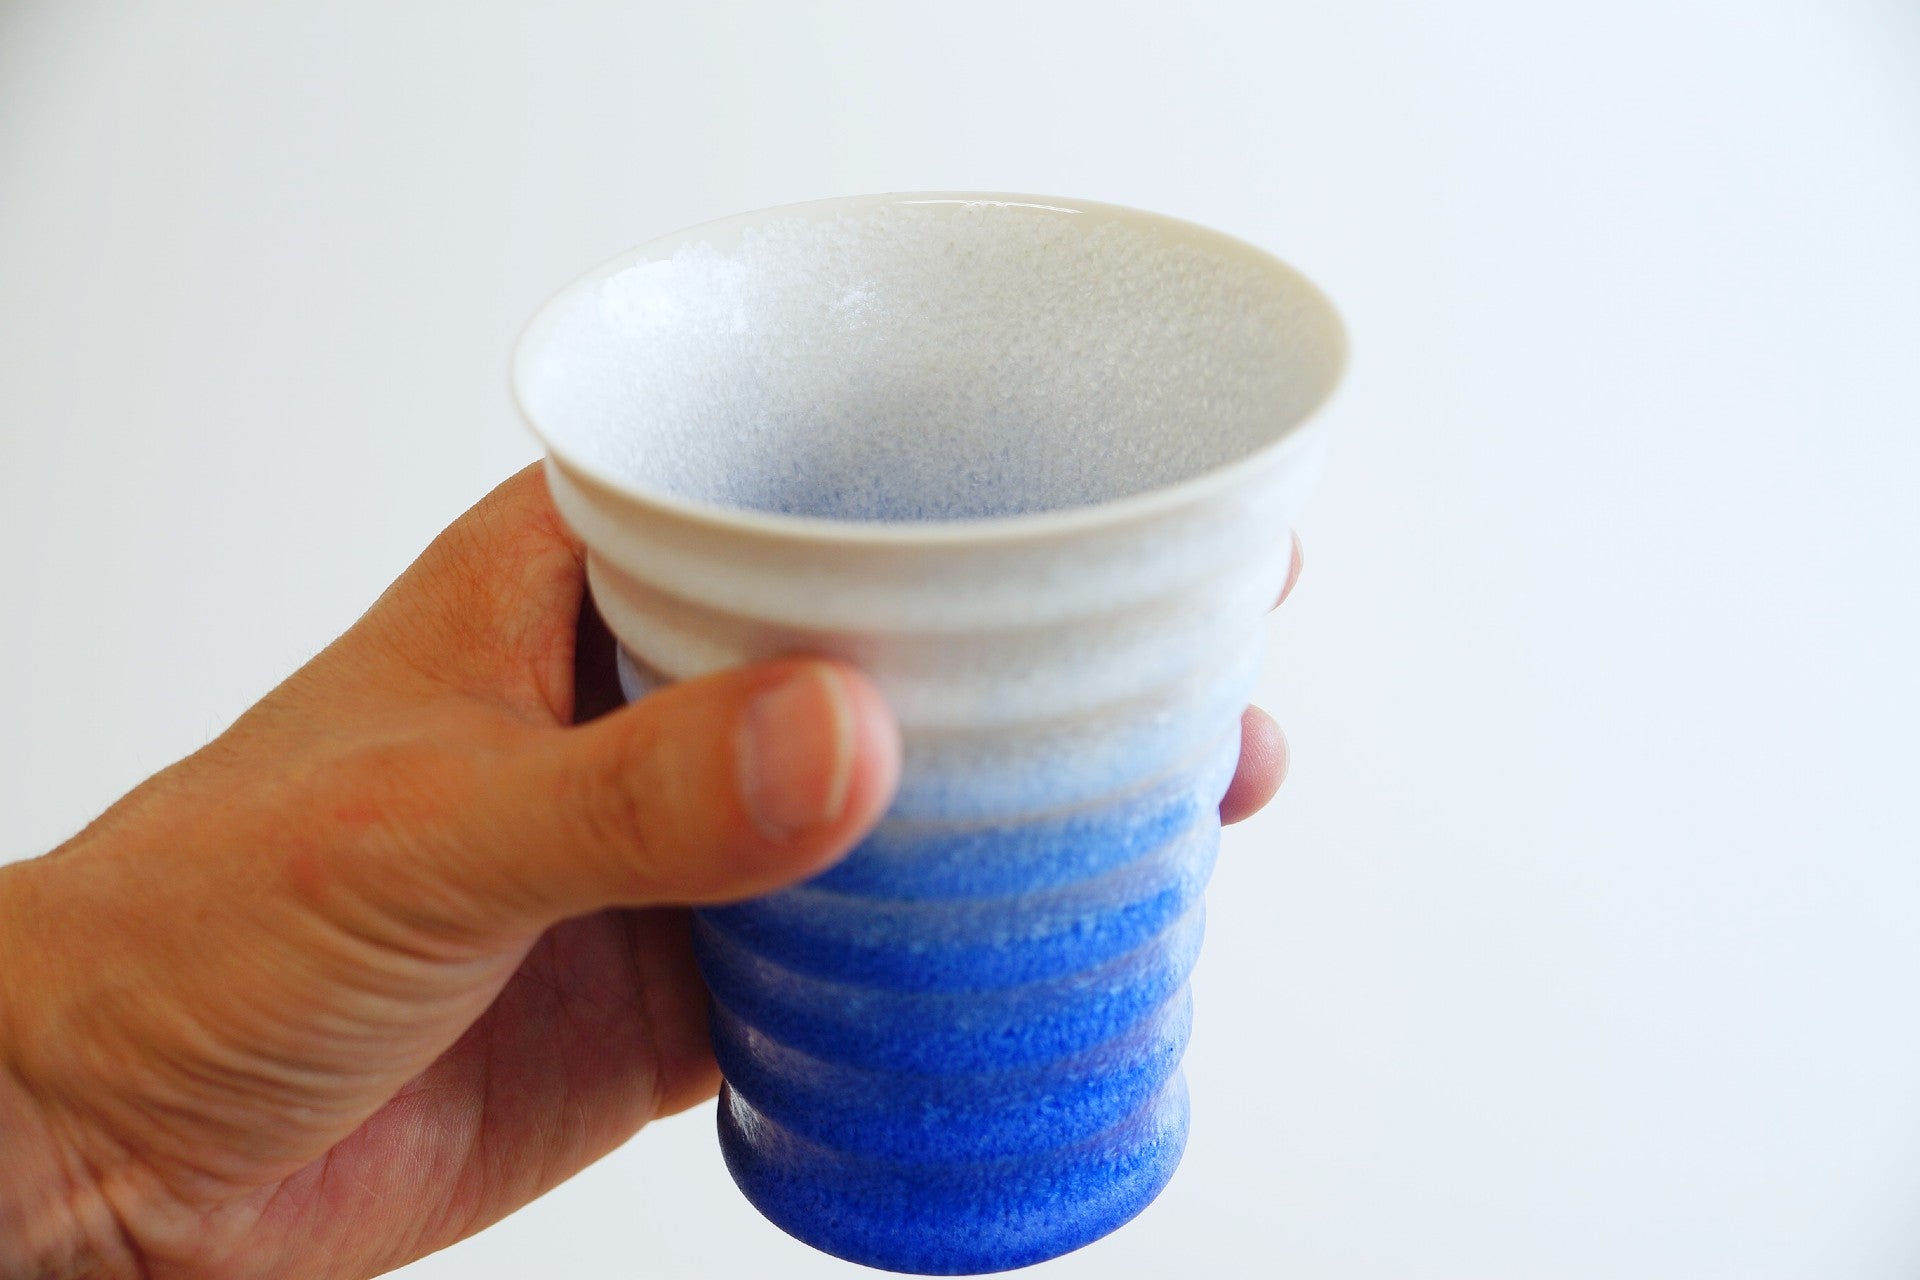 Indigo ceramic cup in a hand